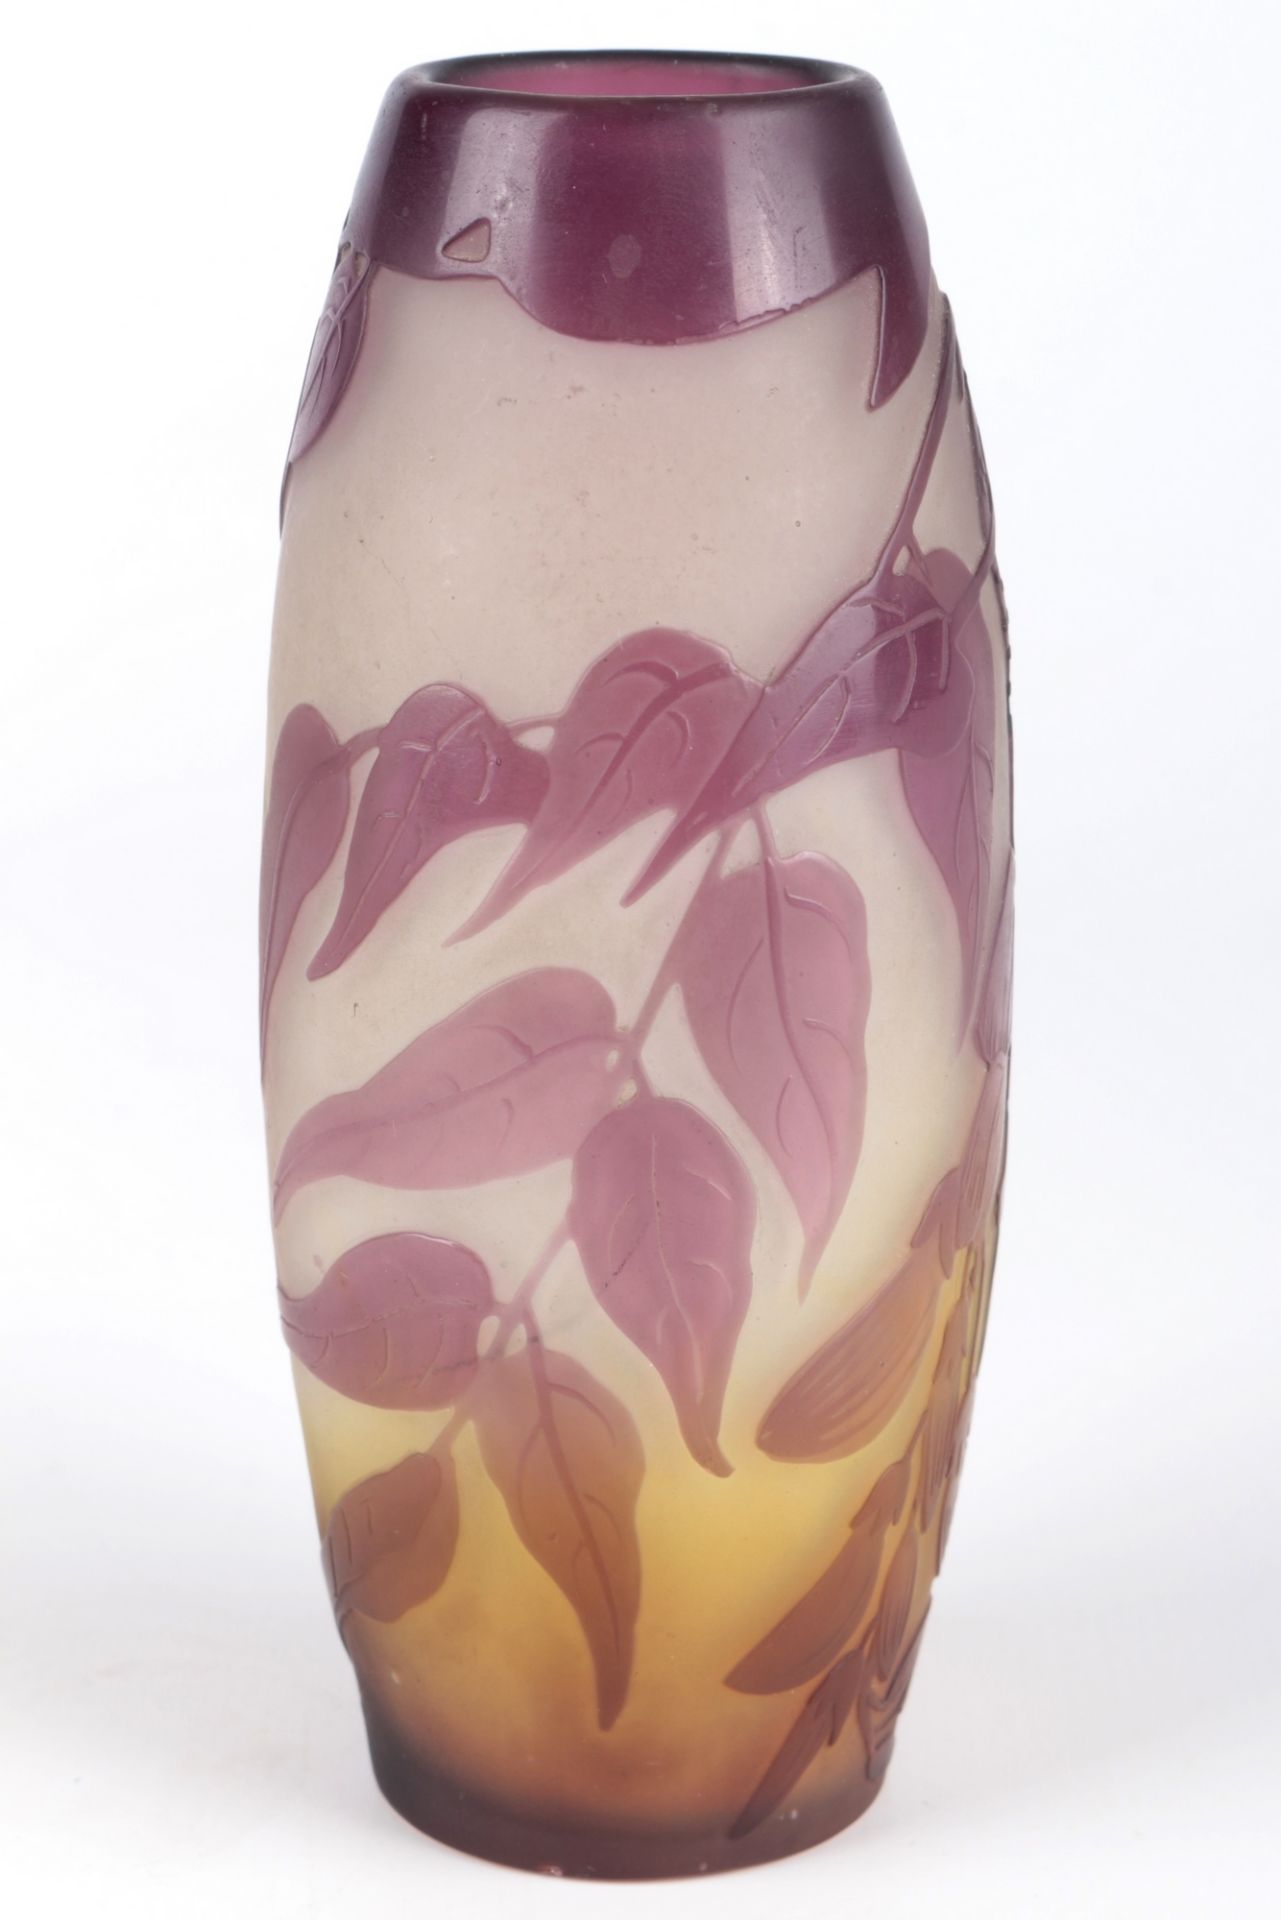 Emile Galle (1846-1904) Jugendstil Vase, french art nouveau glass vase, - Image 4 of 6